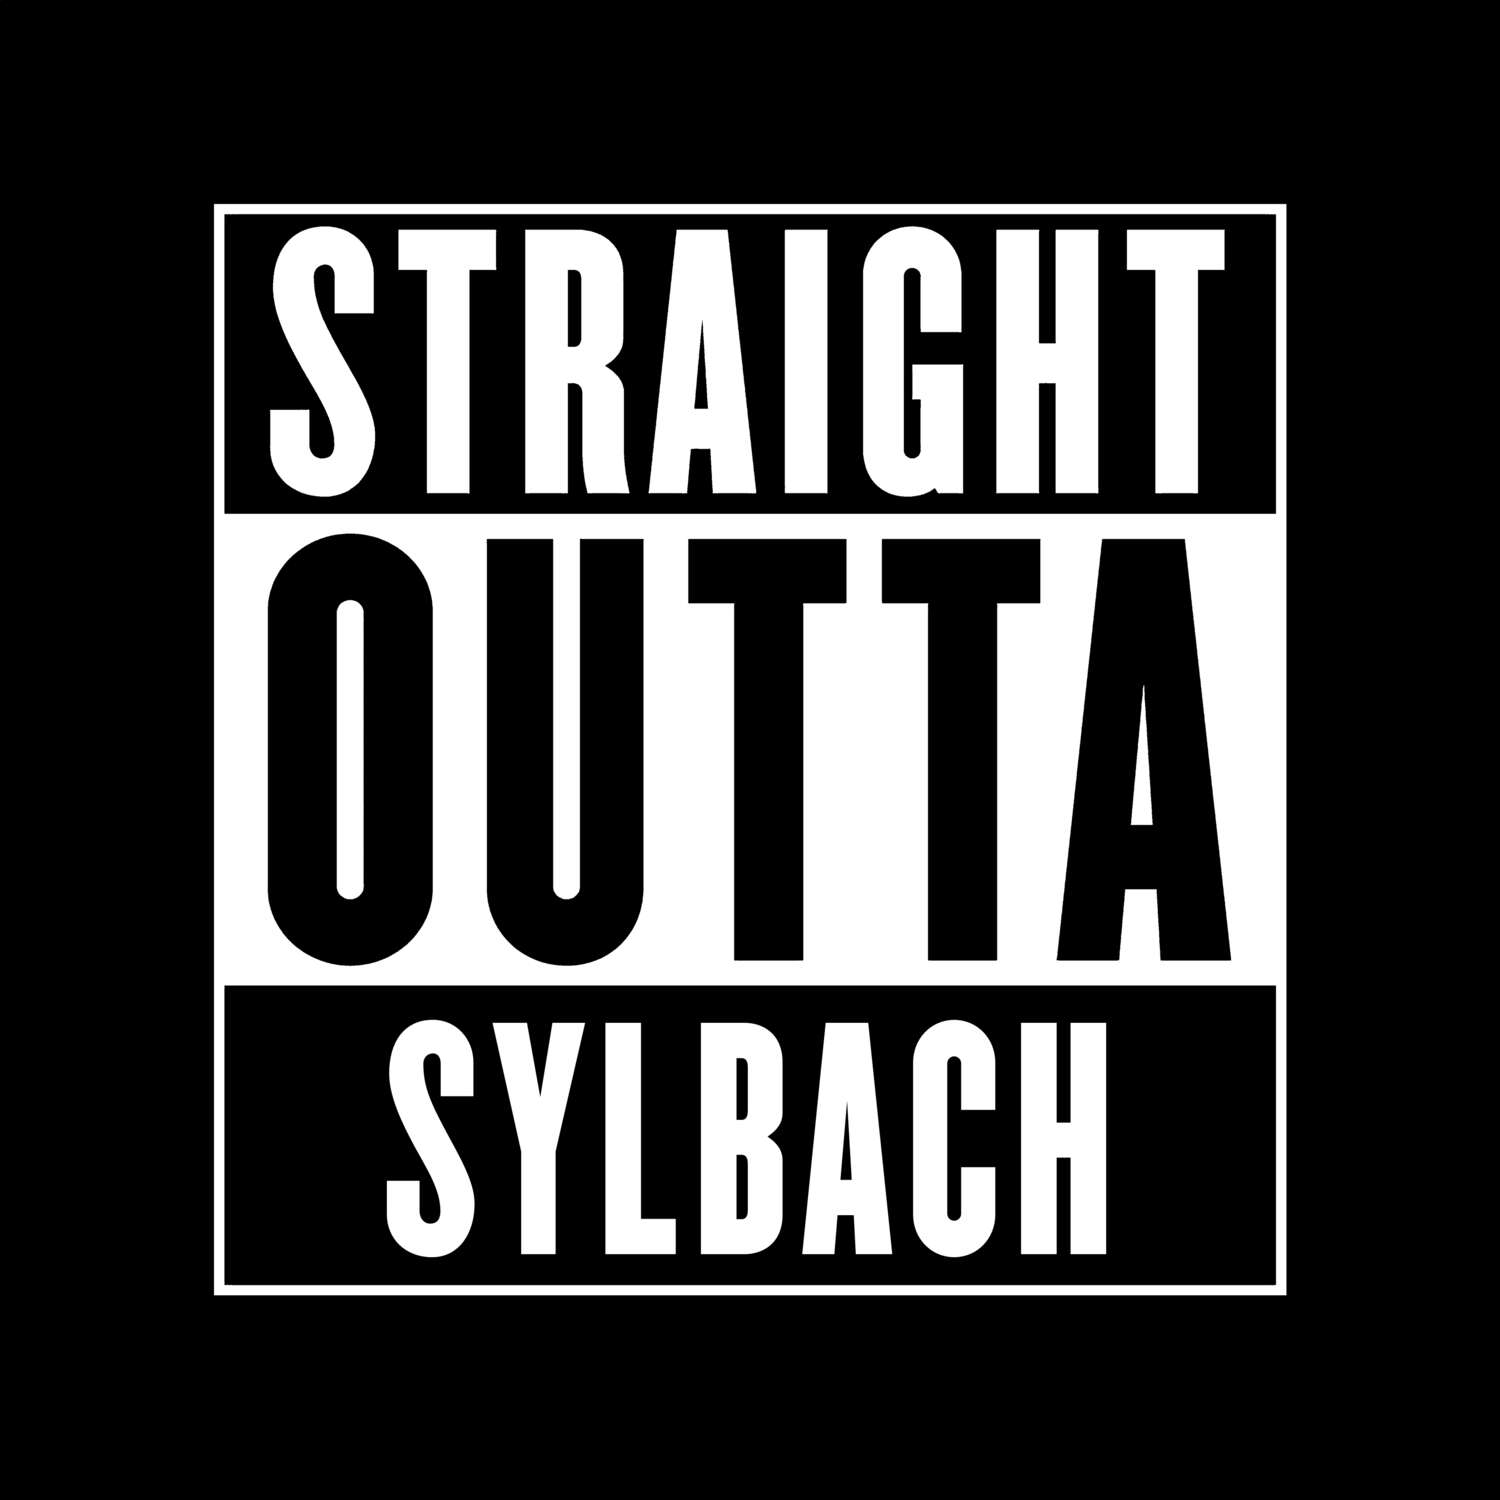 Sylbach T-Shirt »Straight Outta«